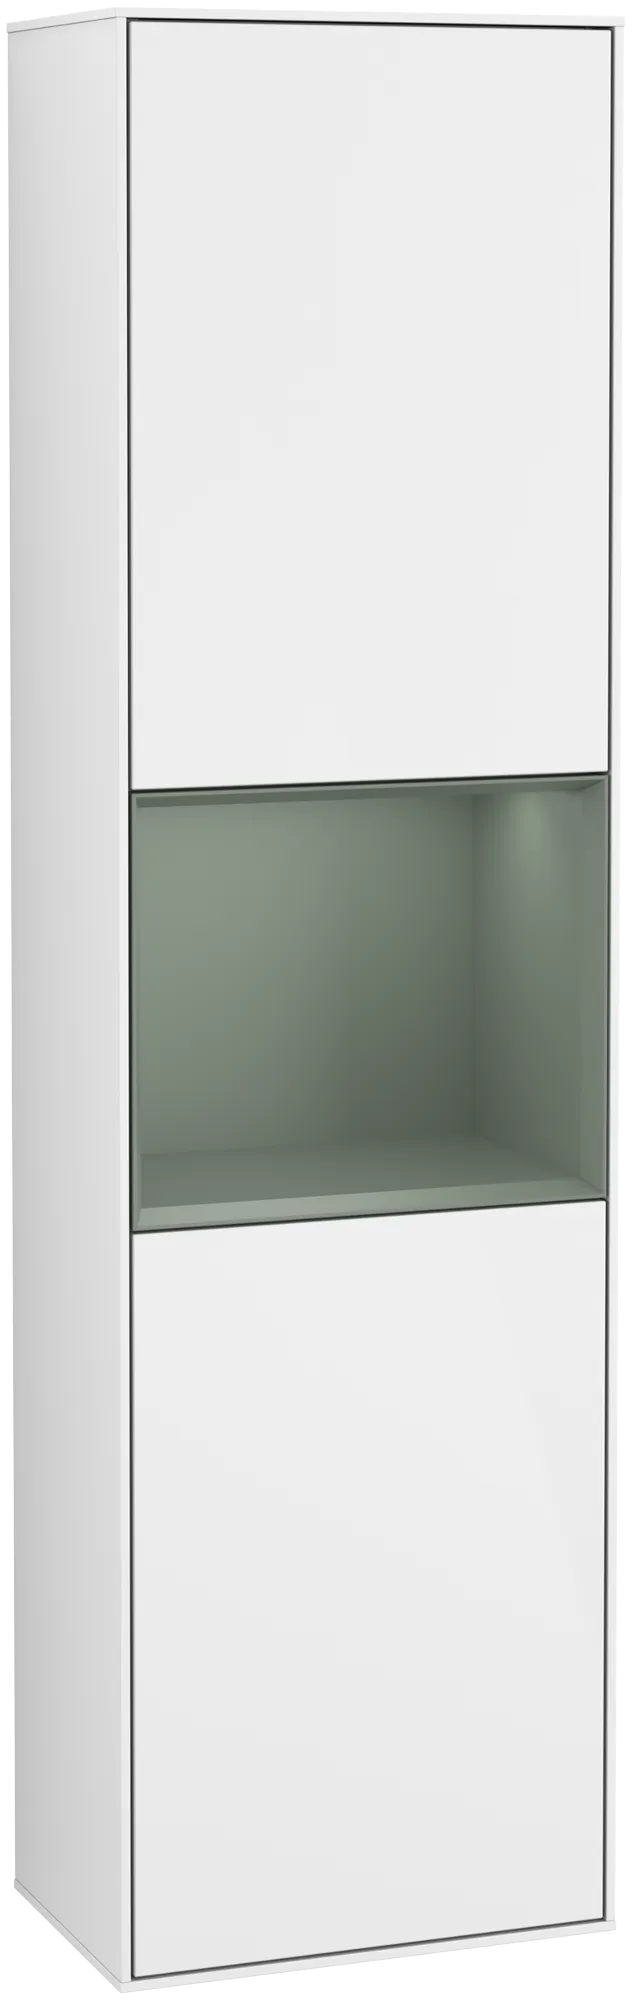 Bild von VILLEROY BOCH Finion Hochschrank, mit Beleuchtung, 2 Türen, 418 x 1516 x 270 mm, Glossy White Lacquer / Olive Matt Lacquer #G460GMGF